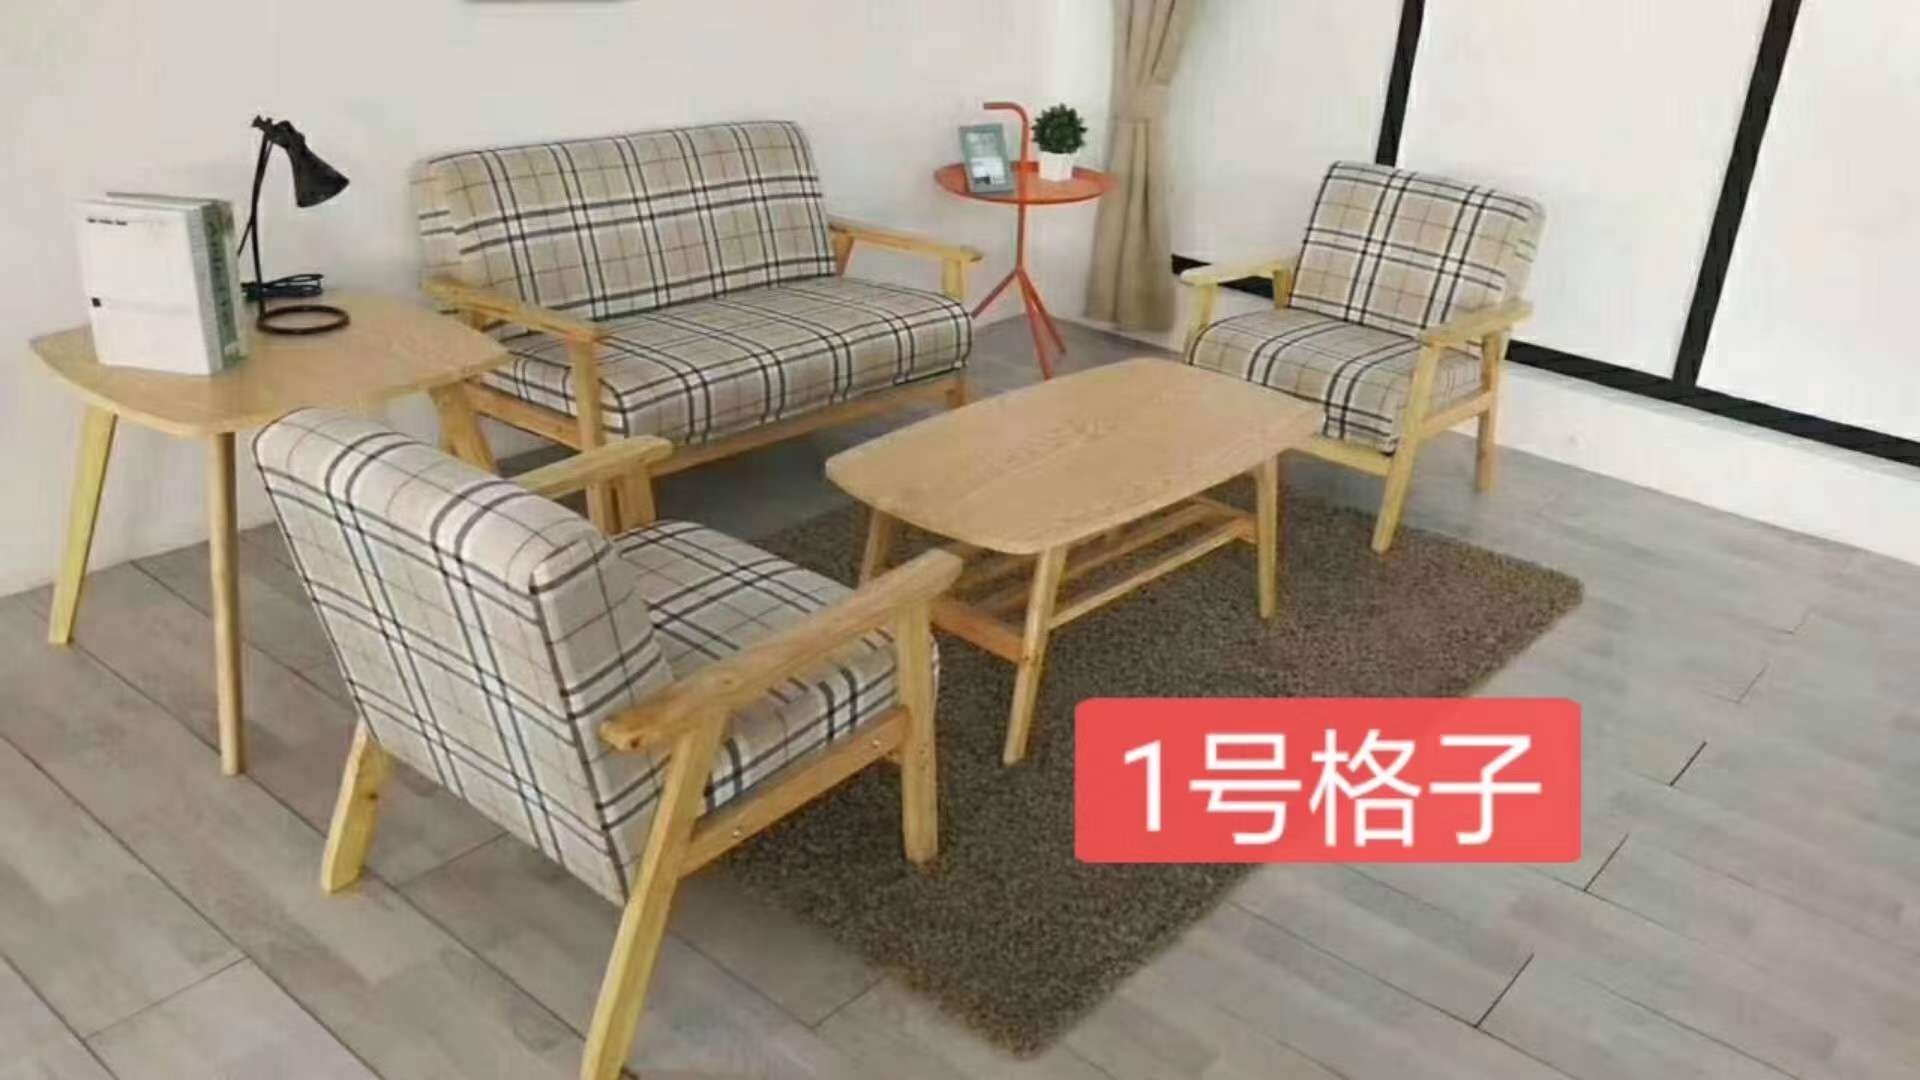 绒布沙发可定制颜色现代沙发轻奢沙发特色沙发彩色沙发客厅沙发流行沙发绒布沙发可定制颜色现代沙发轻奢沙发特色沙发彩色沙发客厅详情图6